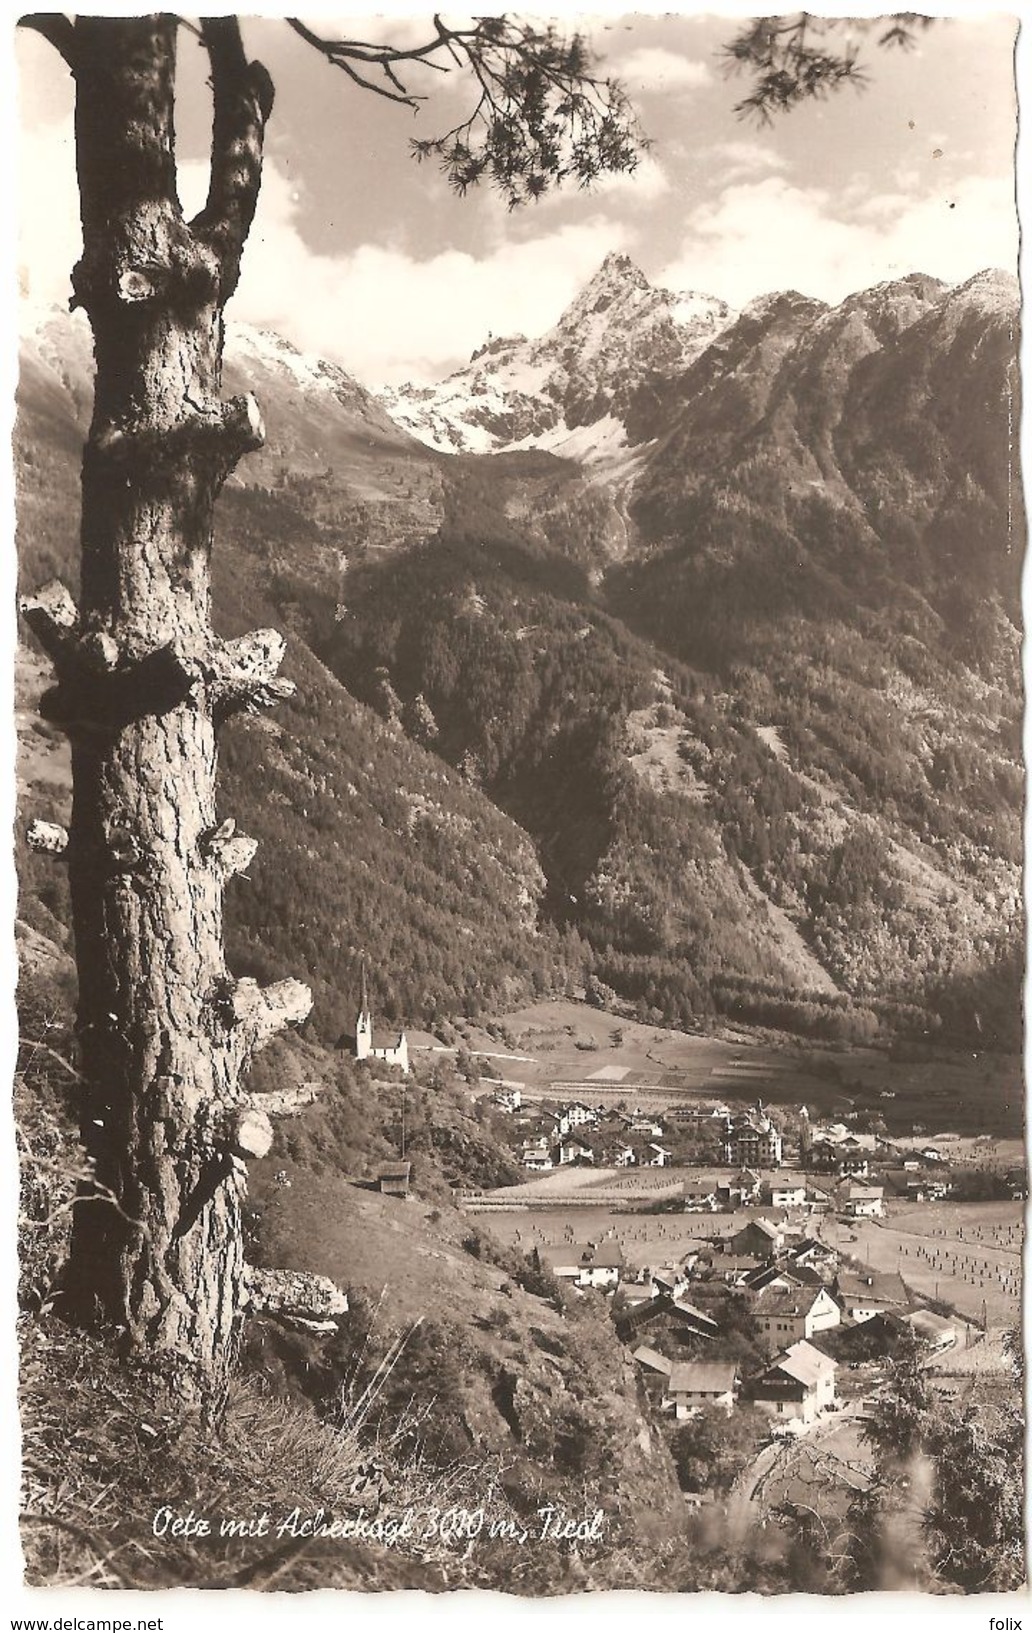 Ötz - Ötz Mit Acherkogel 3010 M Tirol - Verlag Lohmann & Aretz - Panorama - 1959 - Echt Photo - Oetz